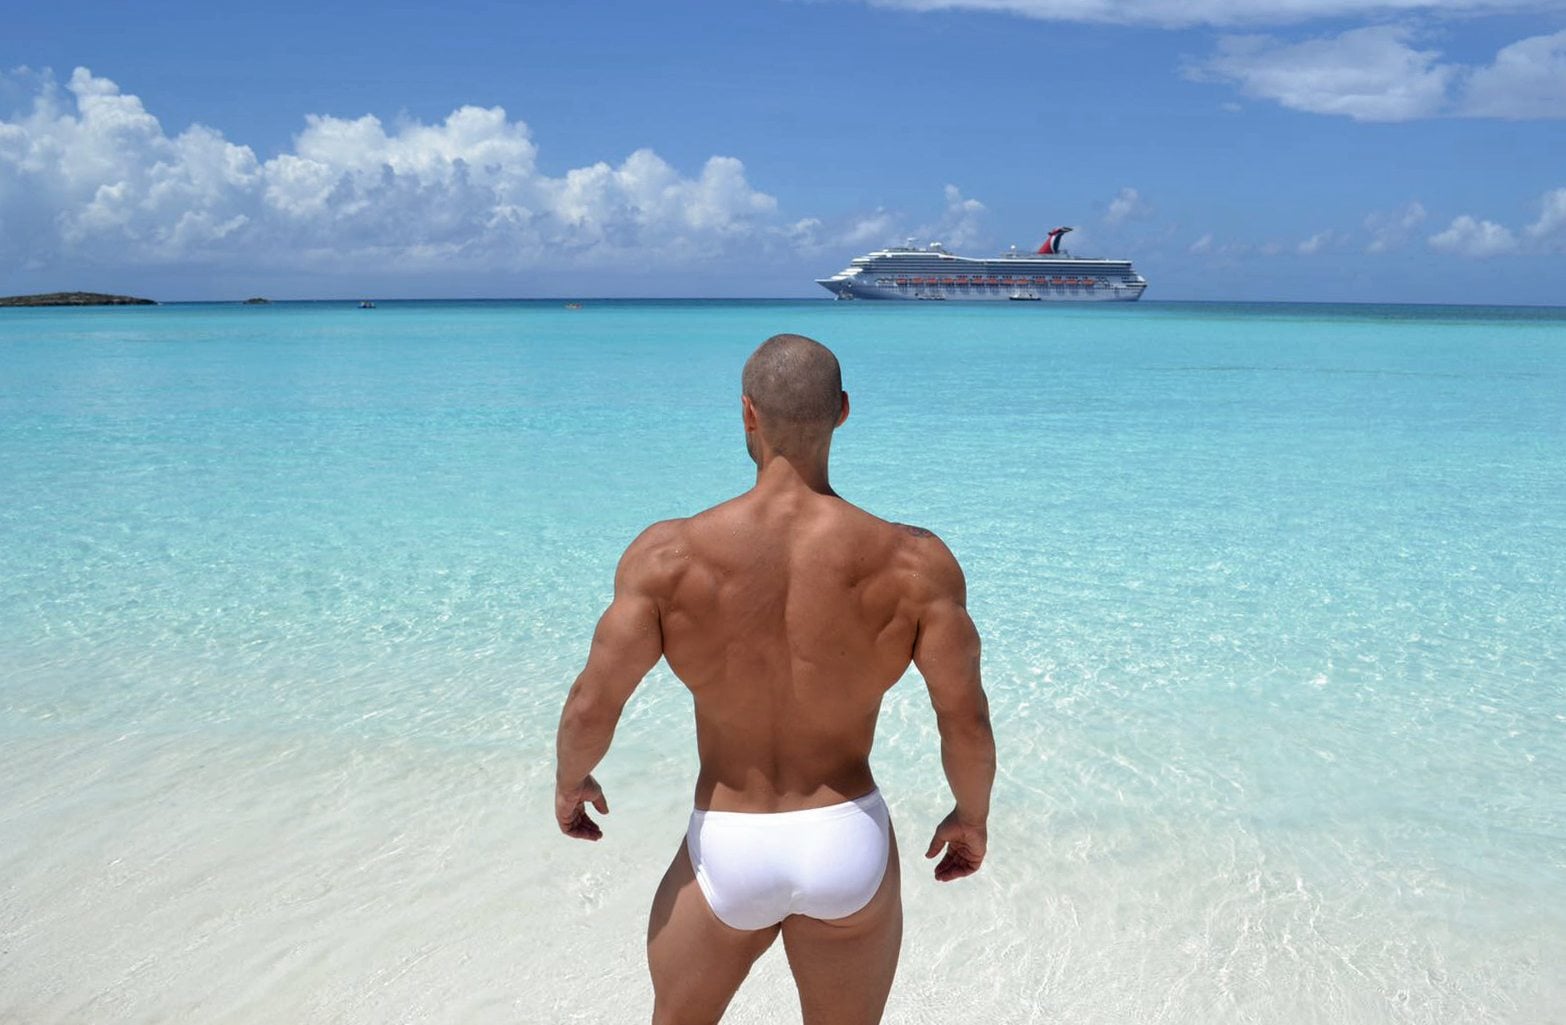 Eric Leto wearing our swimwear at Bahamas. Swimwear by ZLCOPENHAGEN